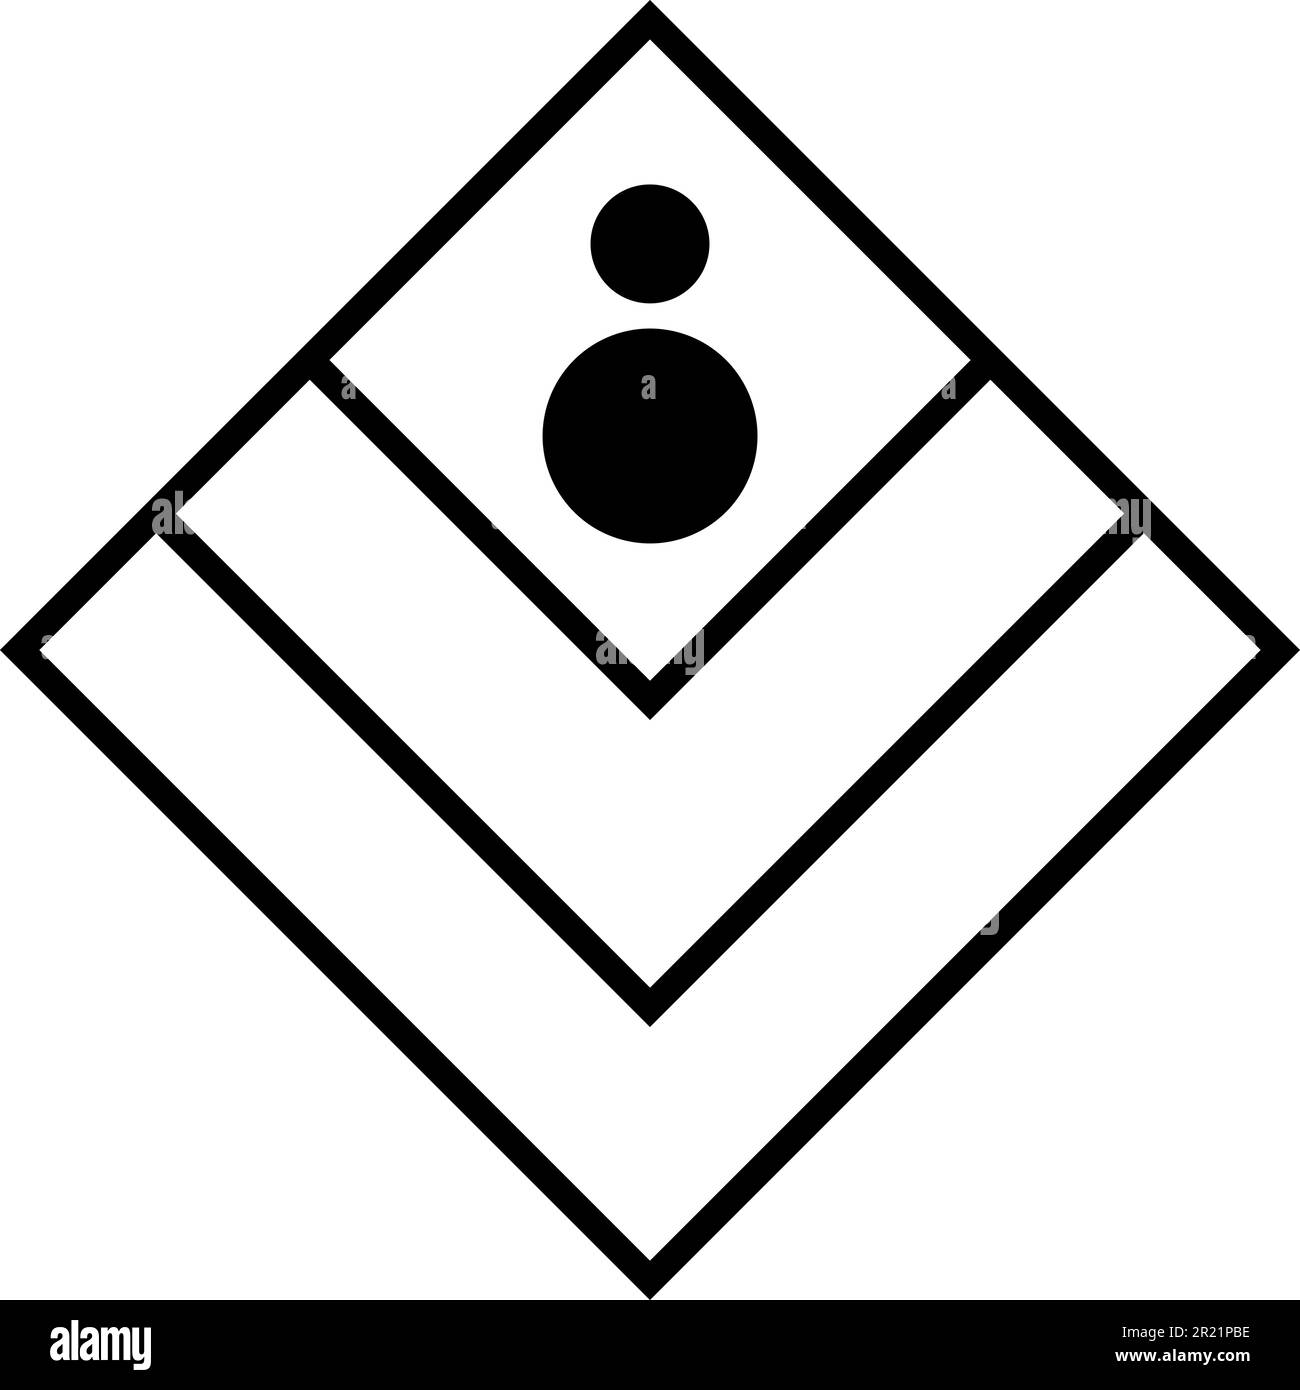 Luxuriöses magisches geometrisches Symbol. Quadrate, Rhombusse, kombiniert zu einem Ganzen mit schwarzen runden Elementen. Mystisches Symbol im Bo-Ho-Stil. Geheimes heiliges V Stock Vektor